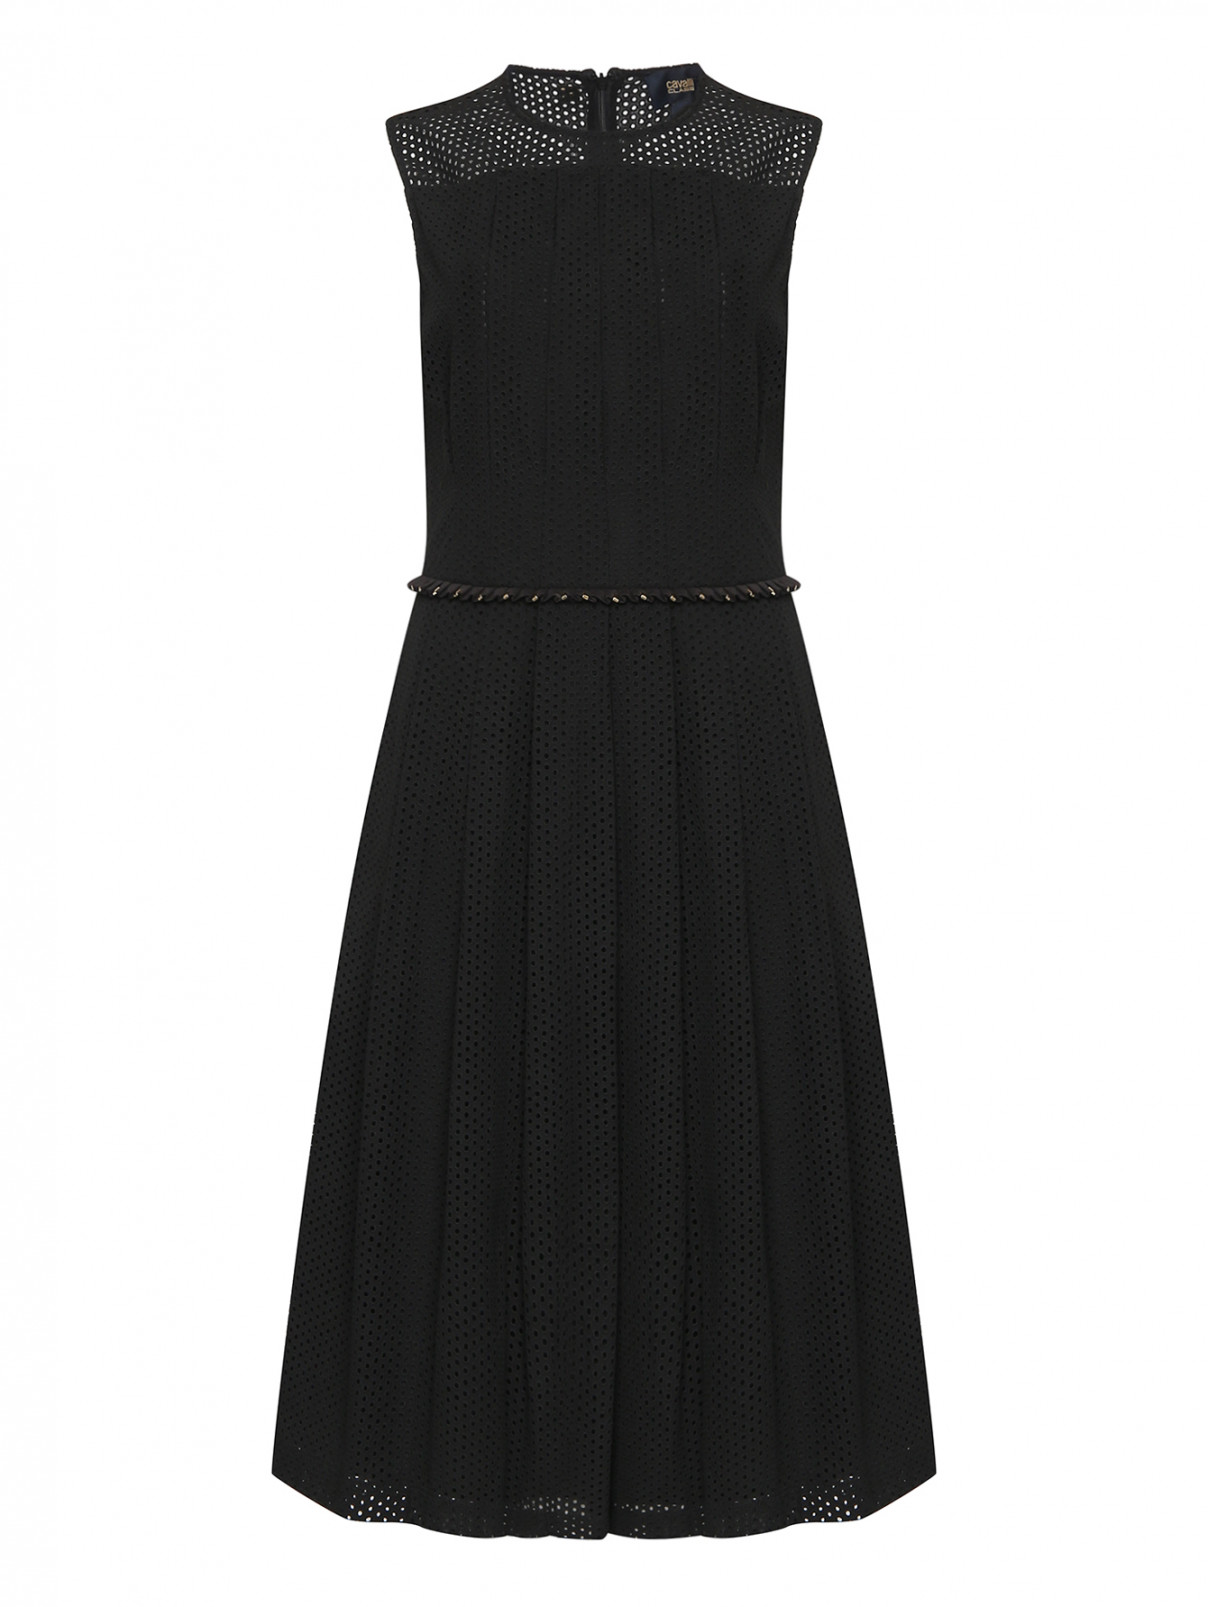 Платье-миди без рукавов с декором Cavalli class  –  Общий вид  – Цвет:  Черный